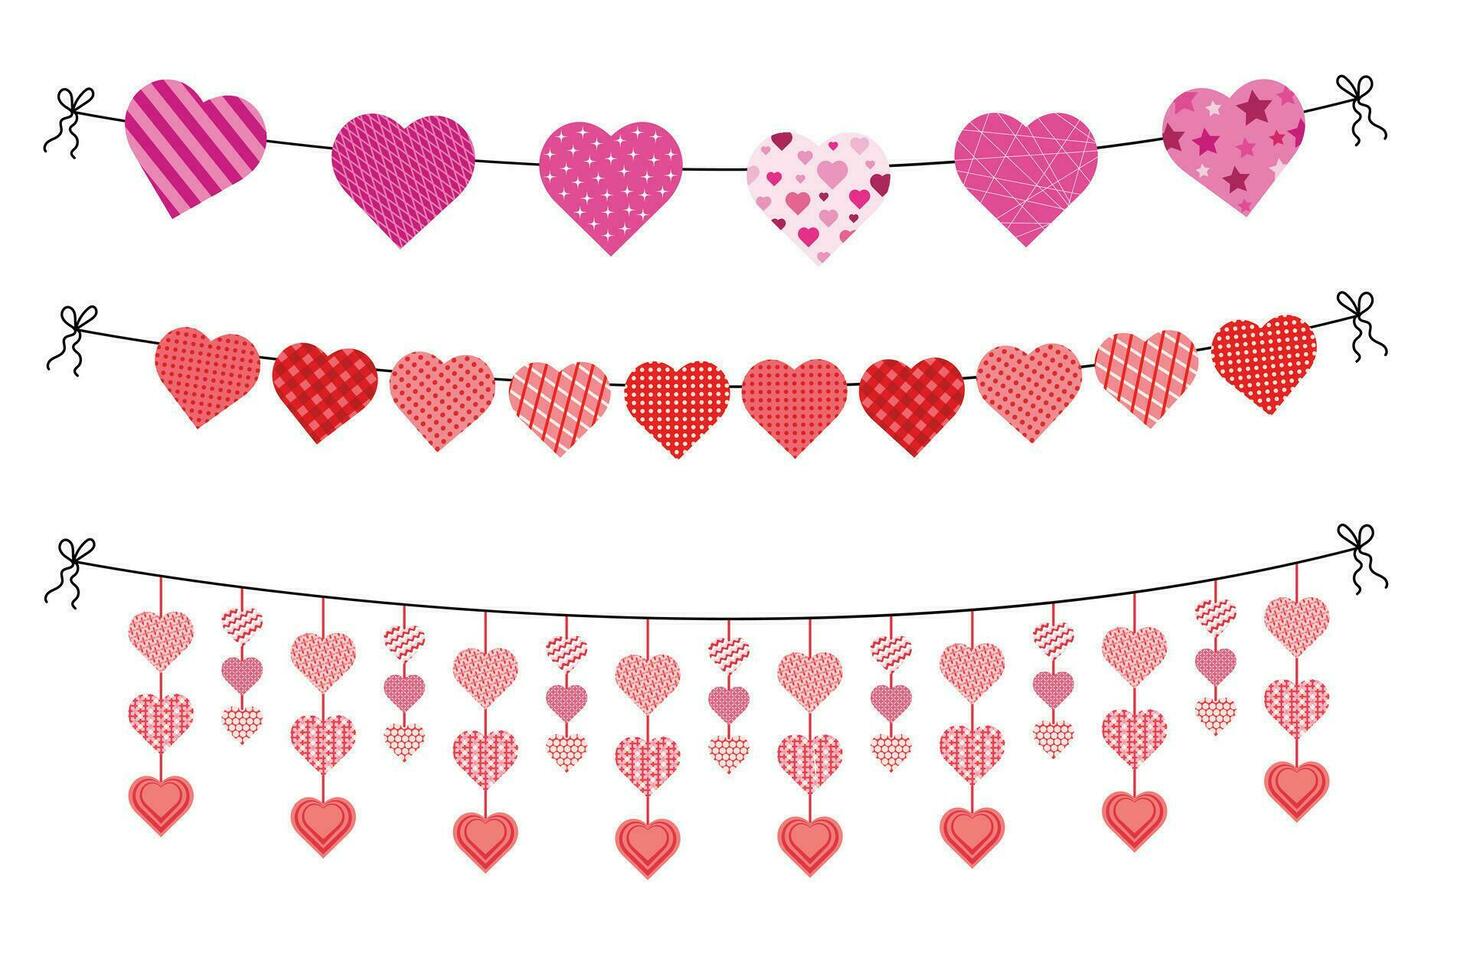 romantique cœur en forme de guirlandes pour la Saint-Valentin journée. cœurs sur une corde. décorations pour la Saint-Valentin journée. vecteur